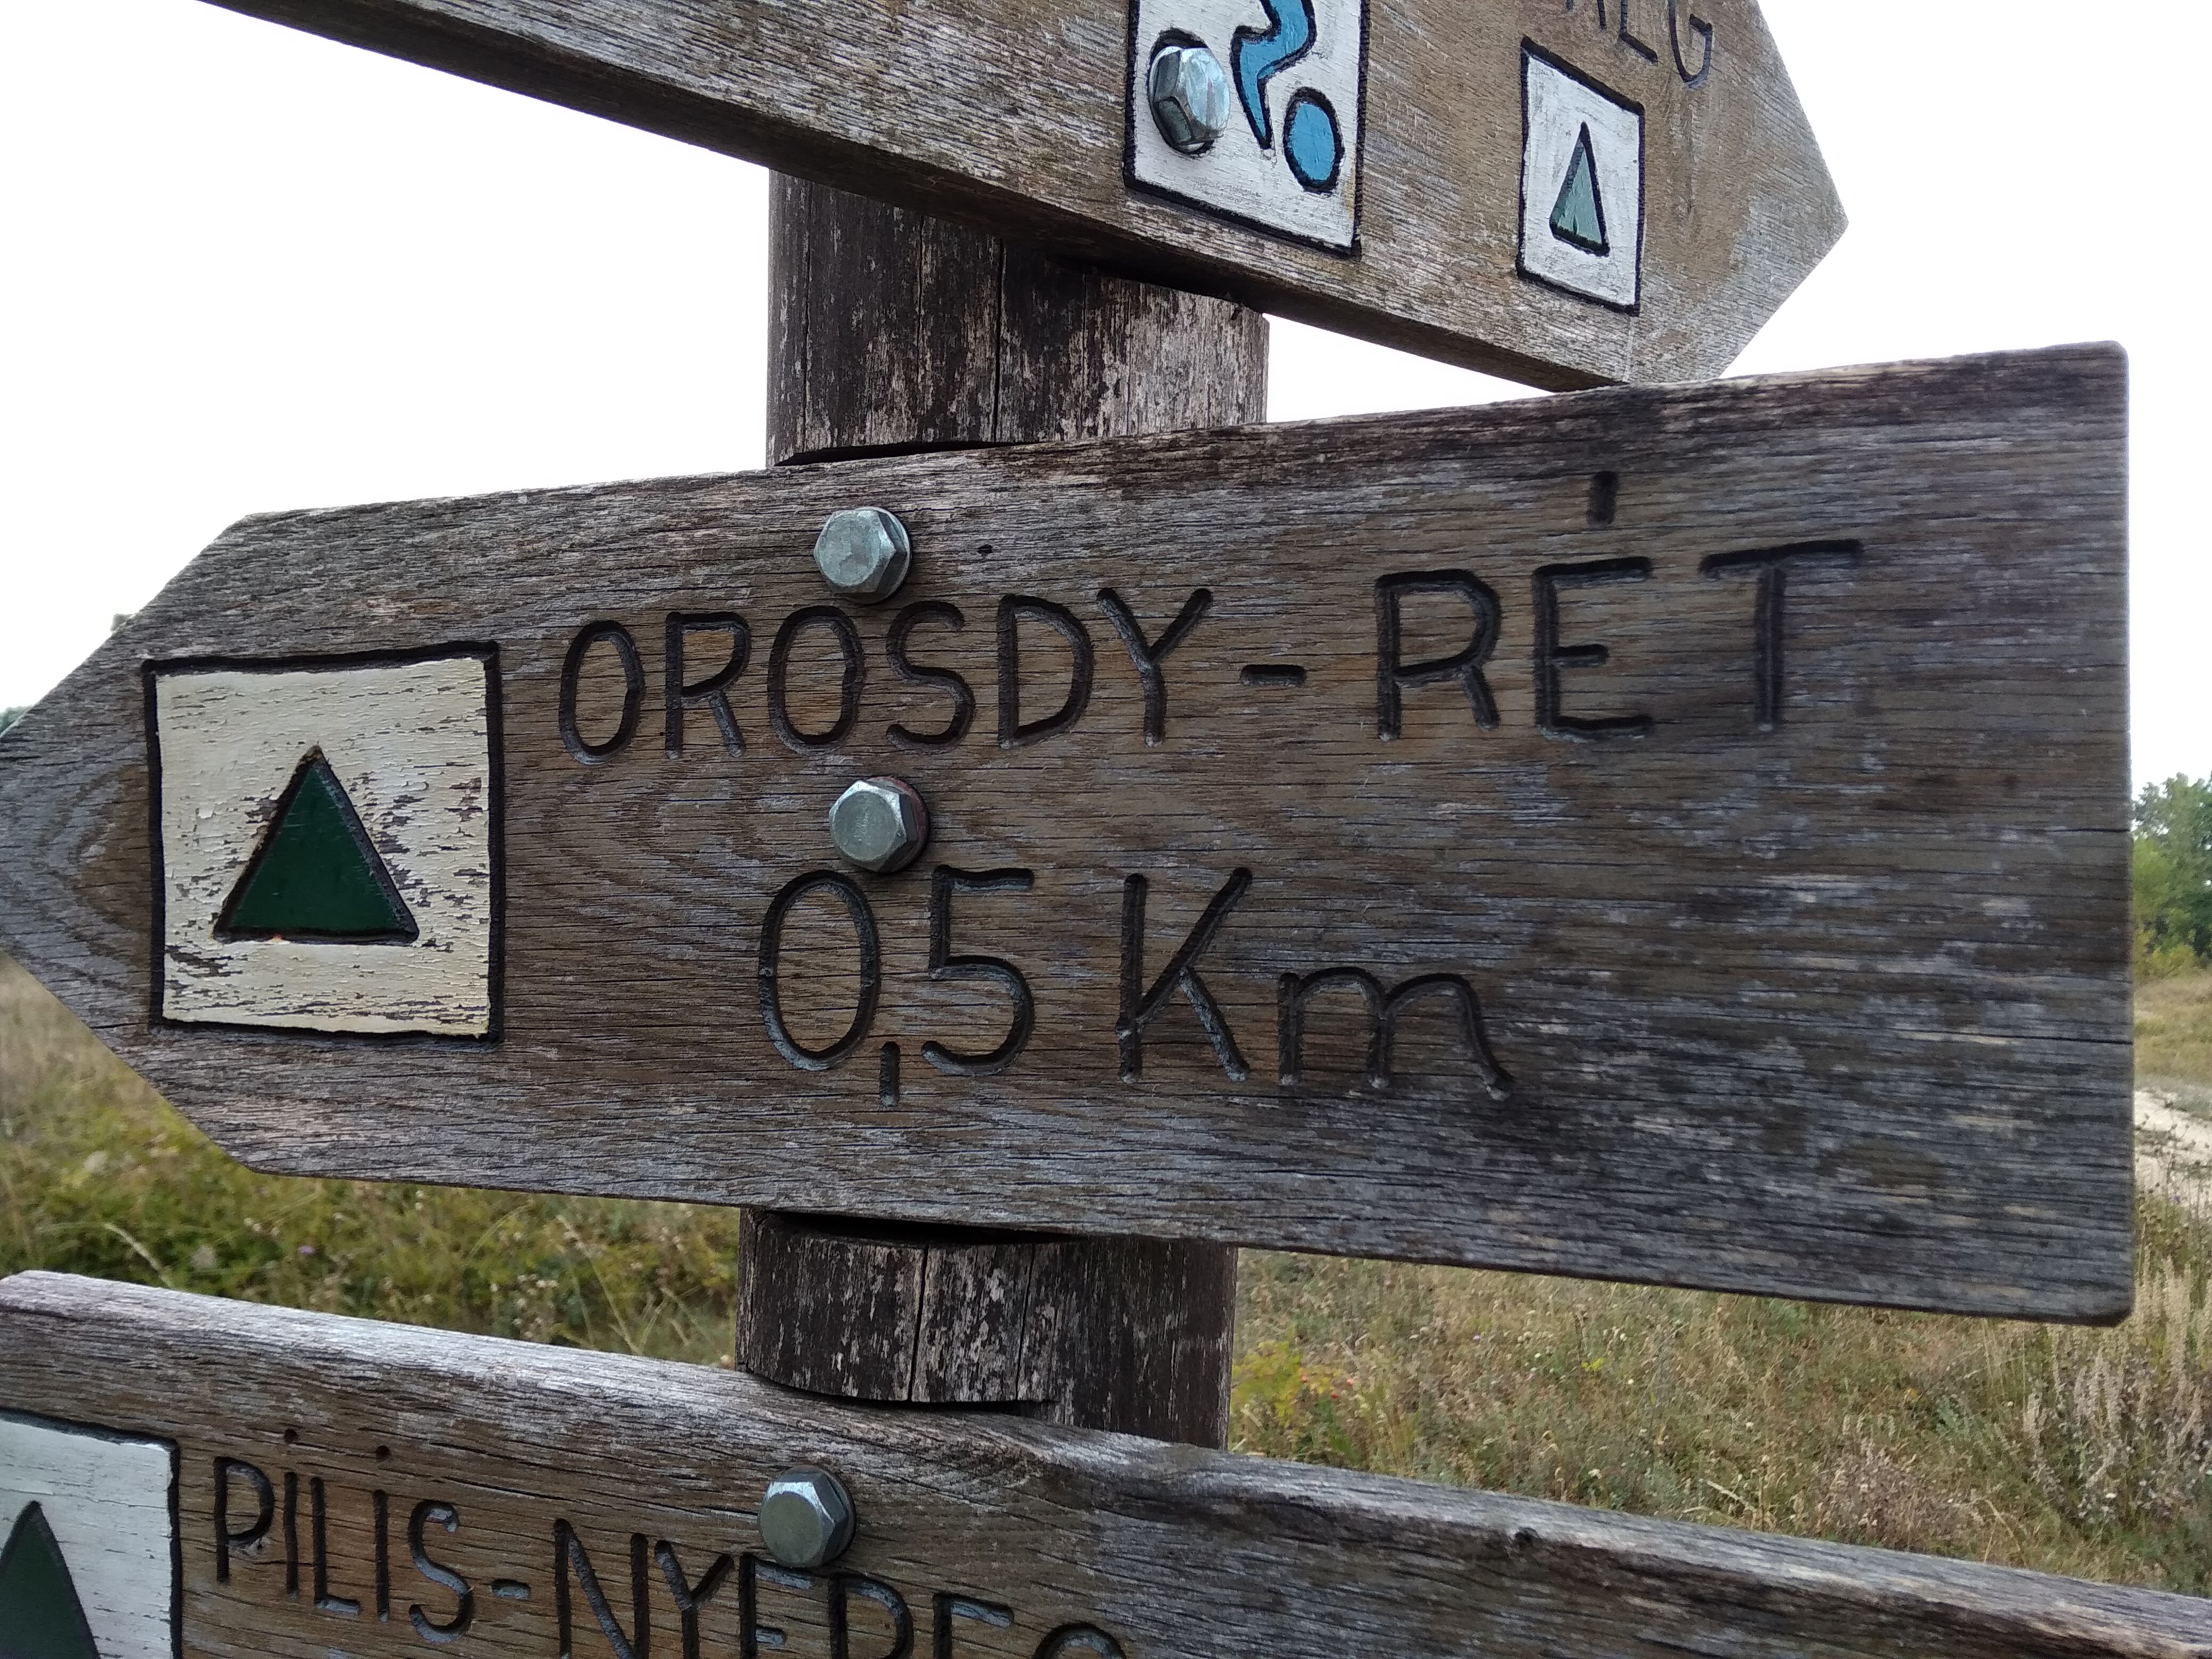 Visszafelé is csak 500 méter az Orosdy - rét.